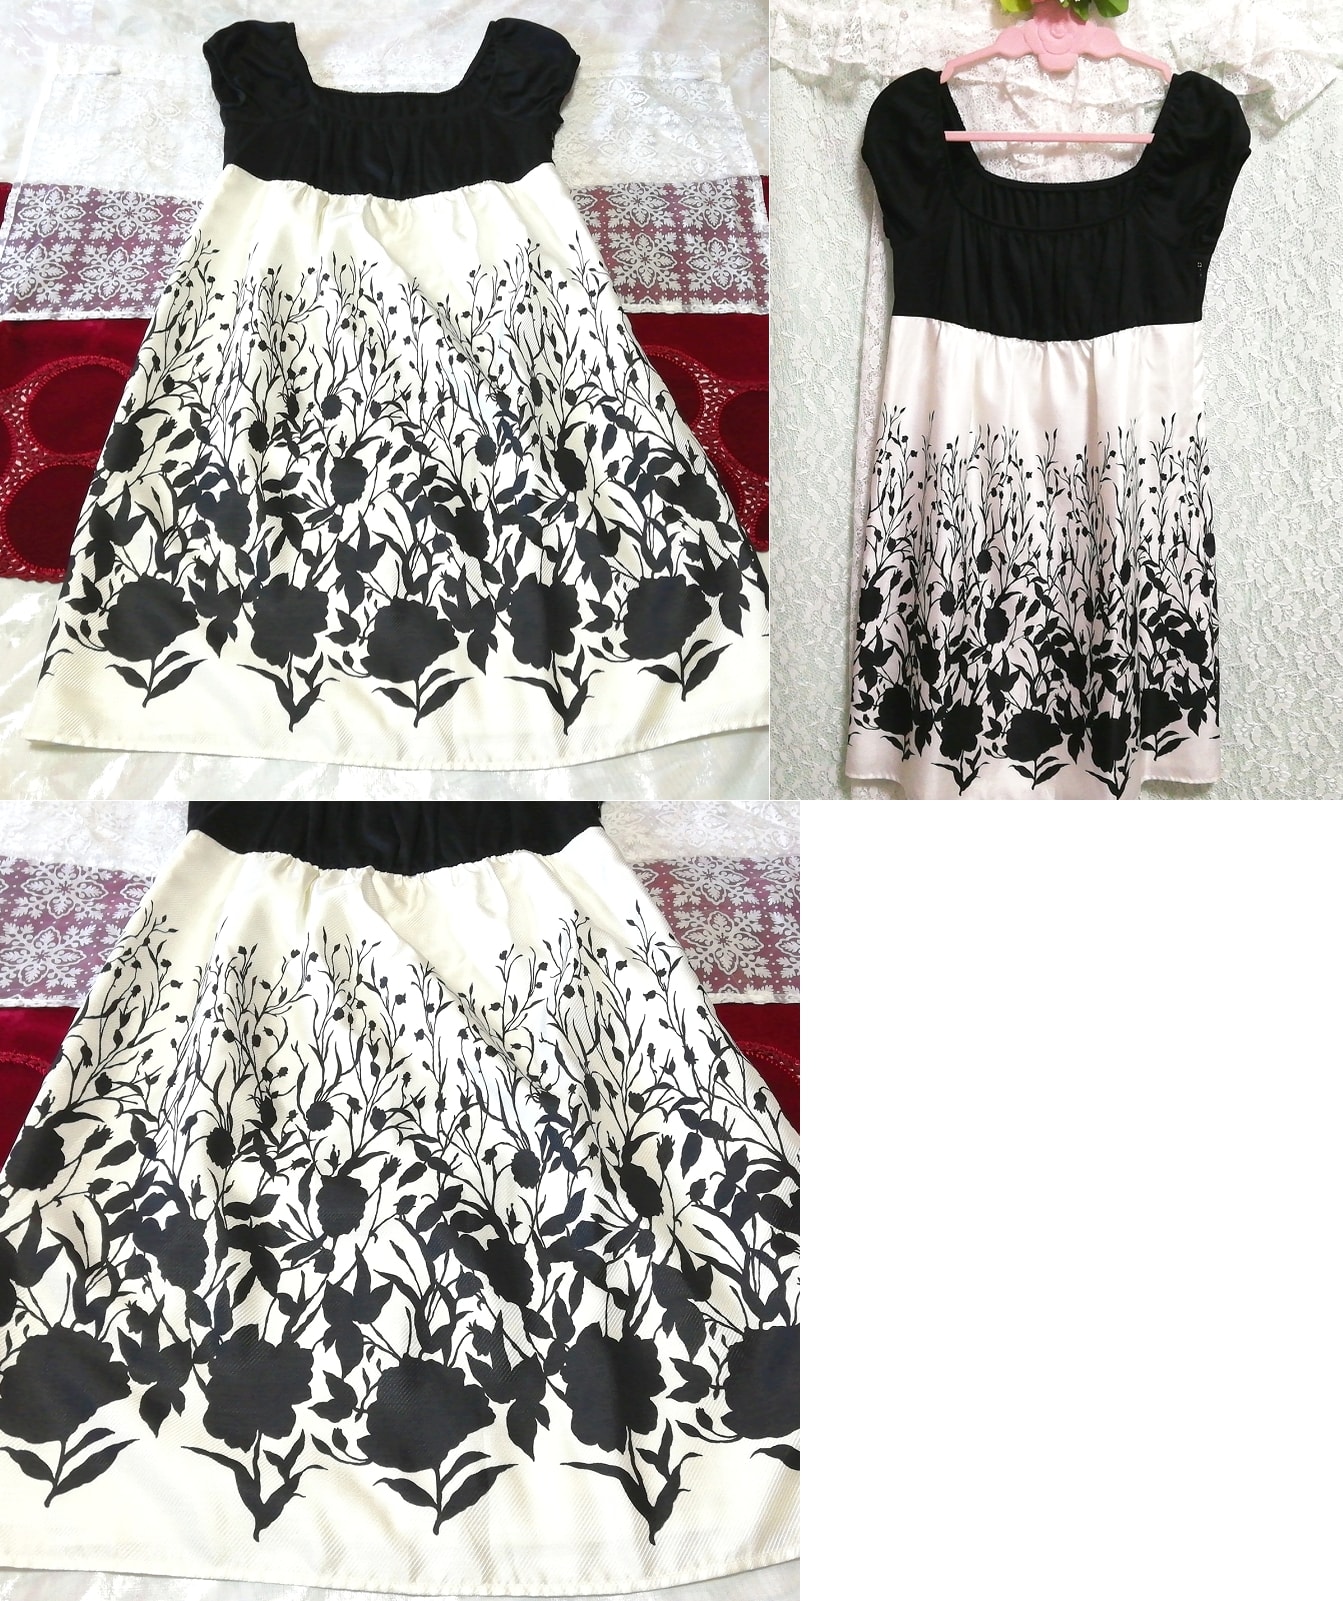 Black and white cutout pattern sleeveless tunic negligee nightgown nightwear dress, tunic, sleeveless, sleeveless, m size